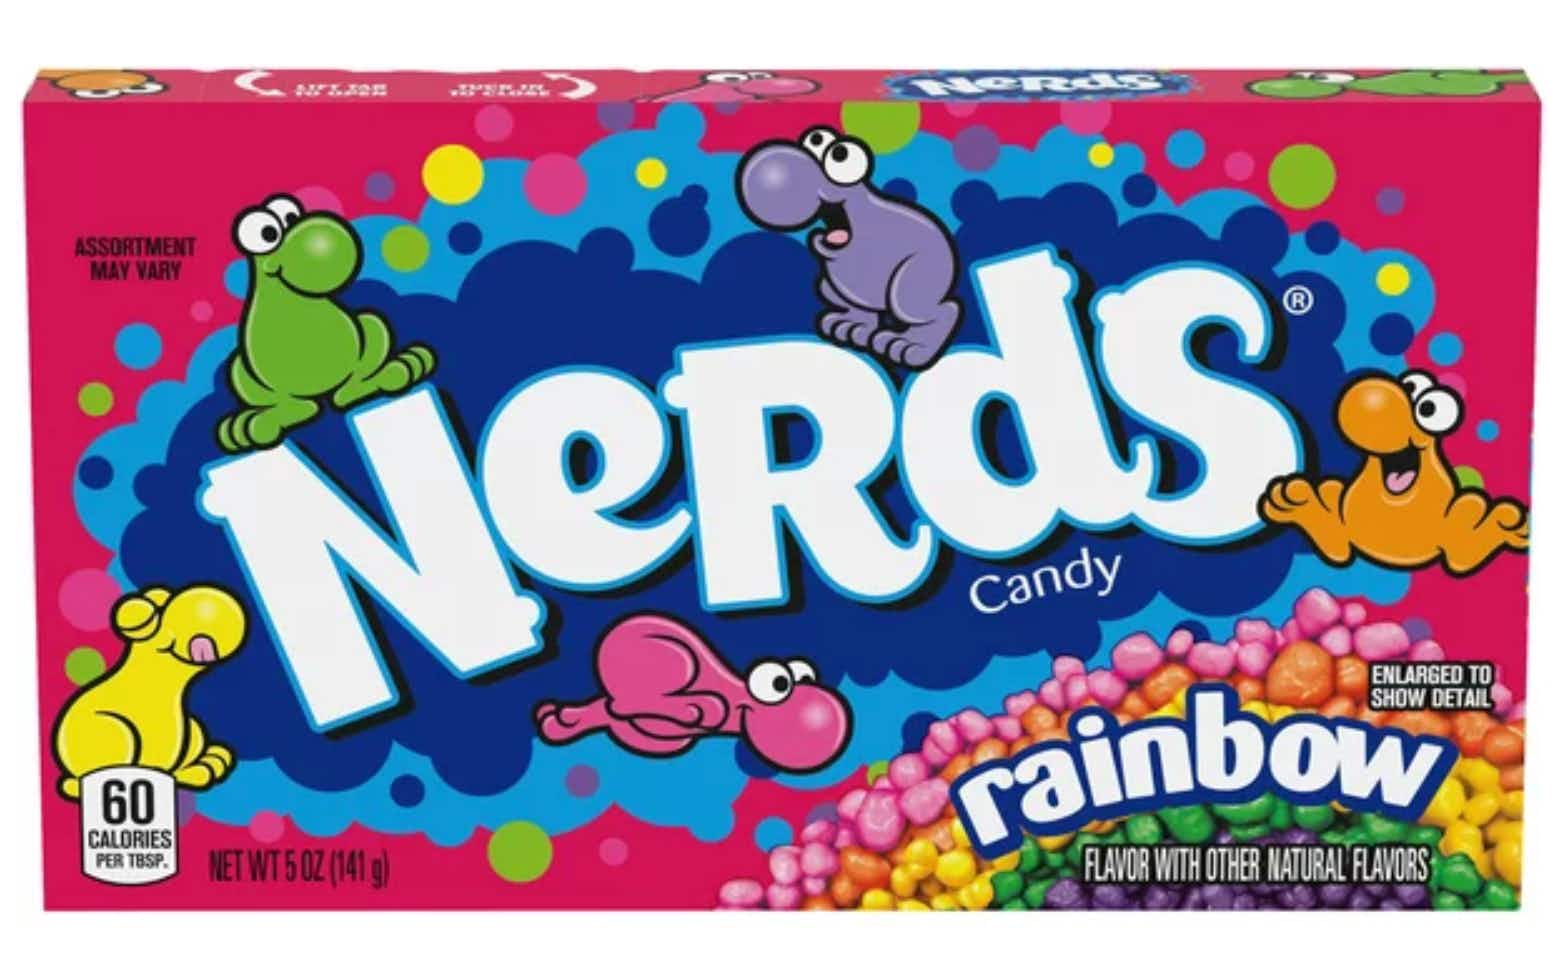 Nerds candy box